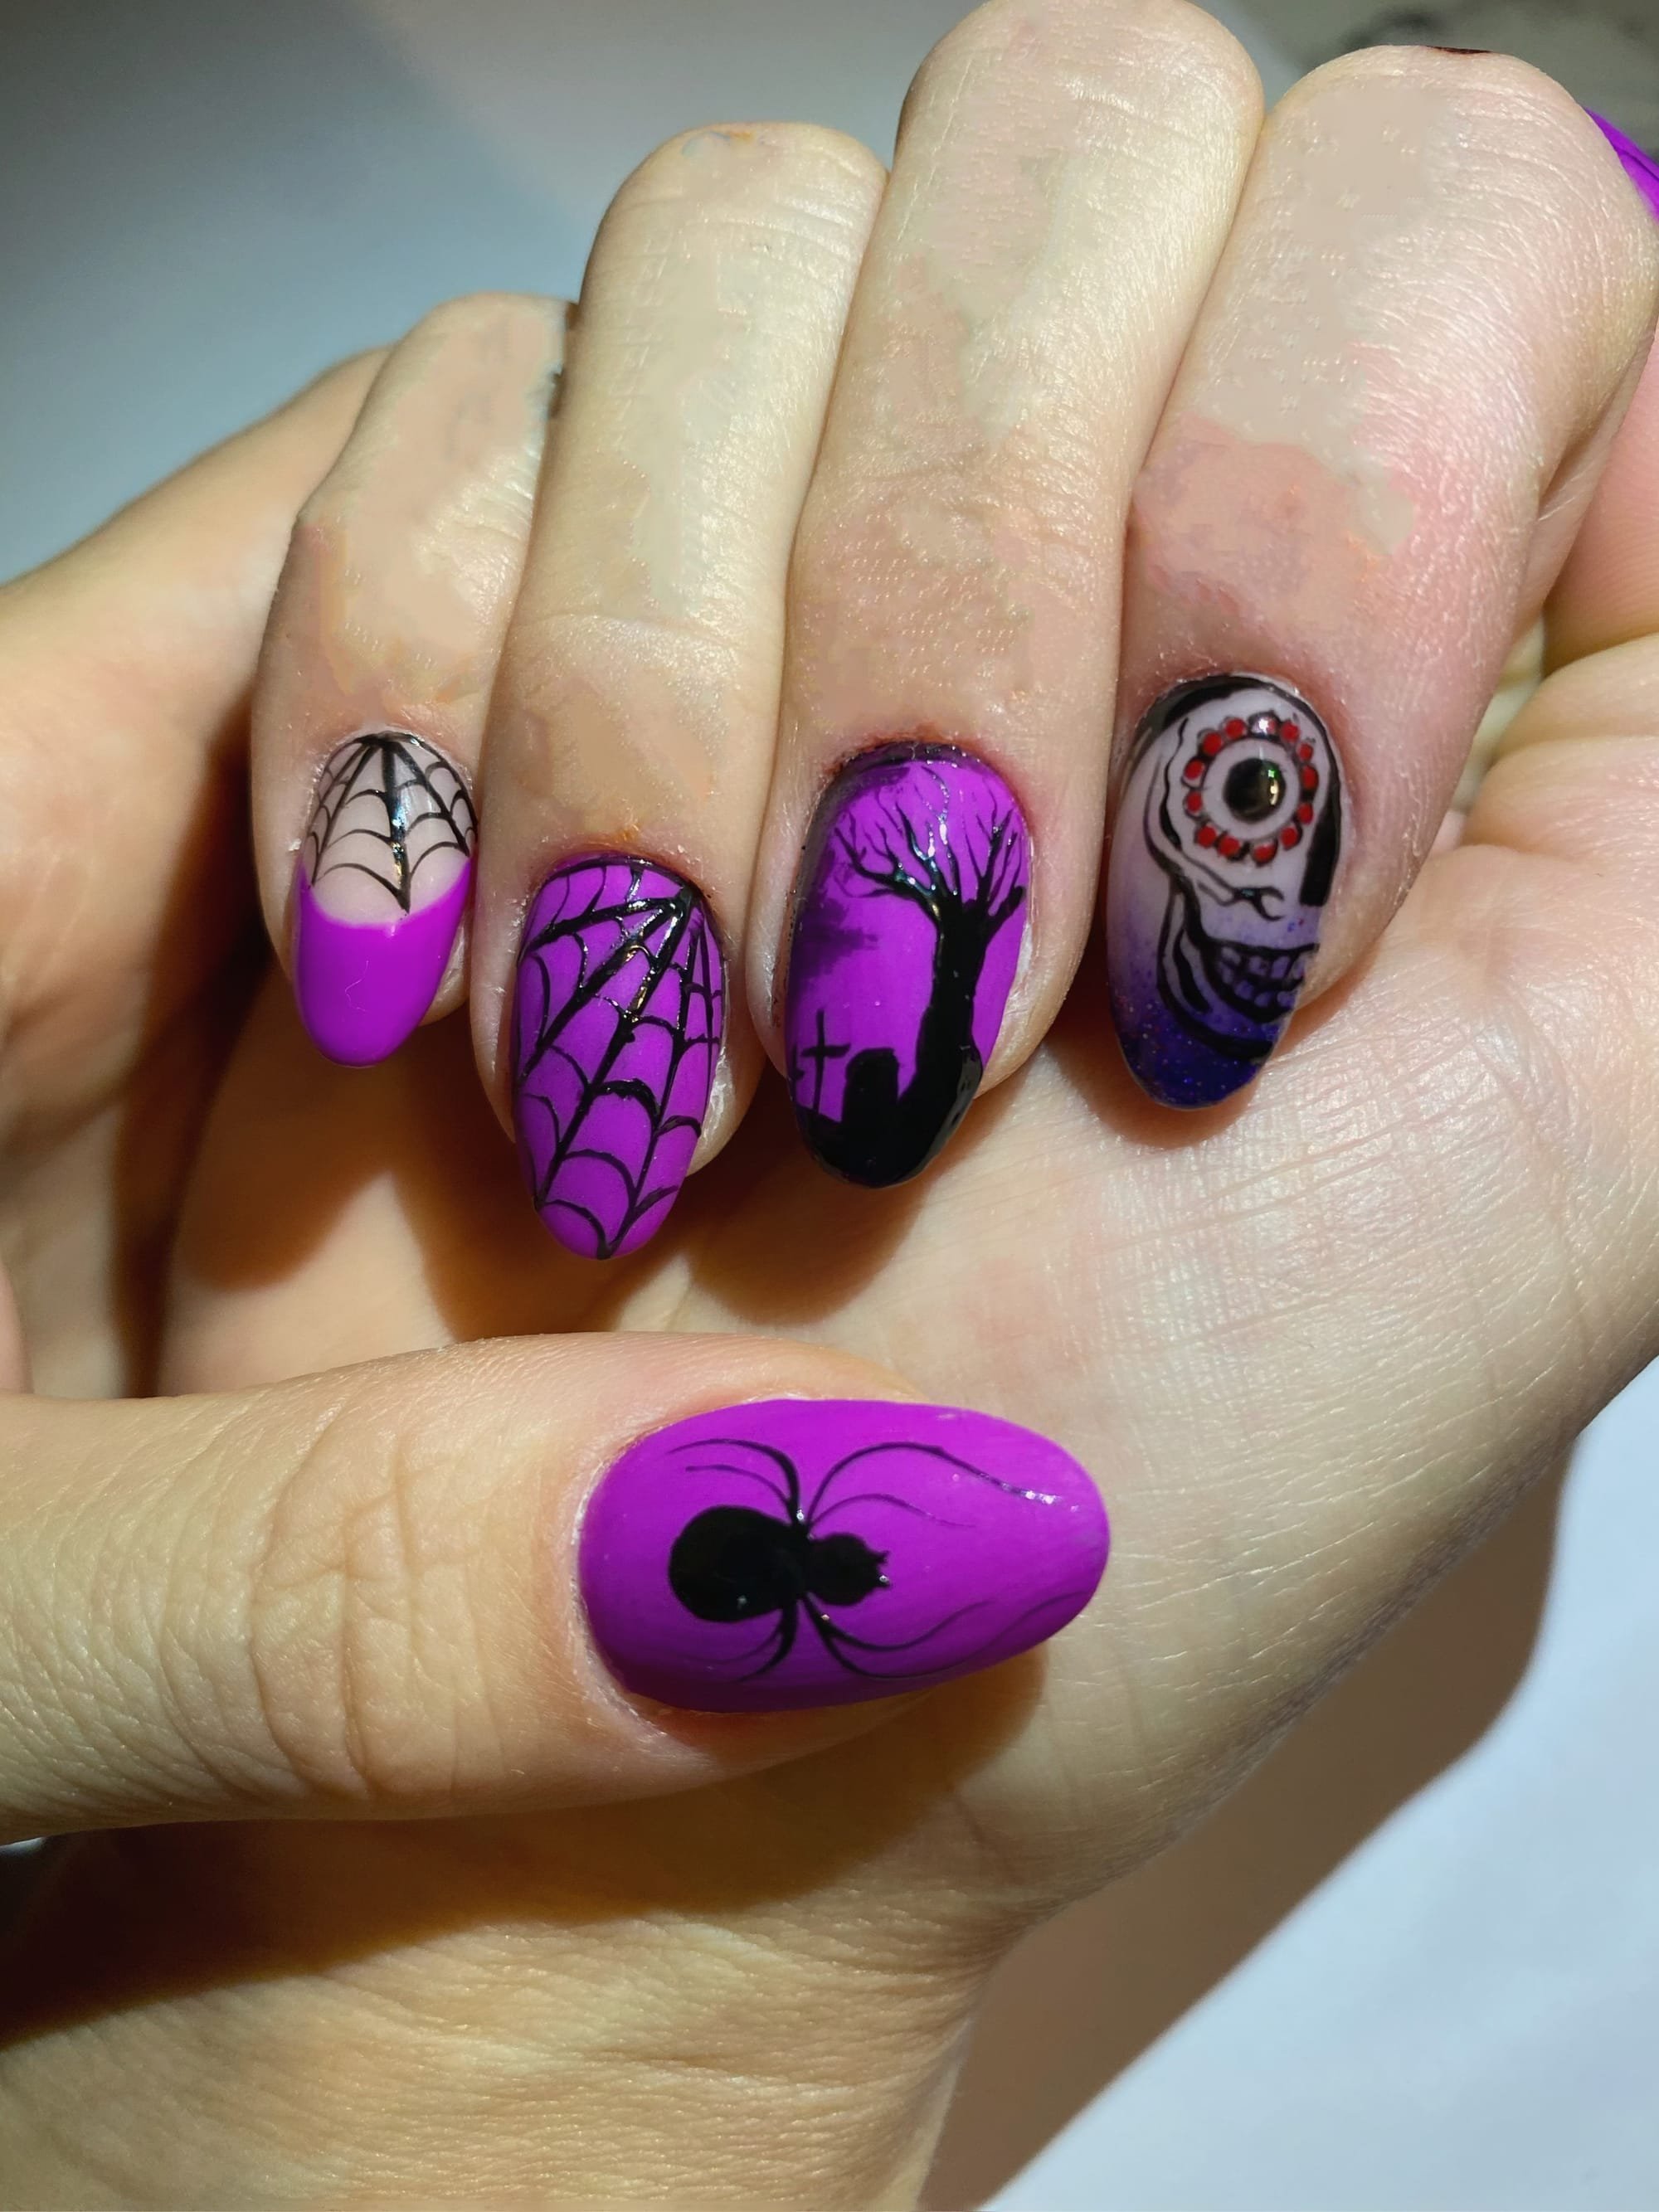 How To Make Nail Art At Home | how to make nail art at home | HerZindagi